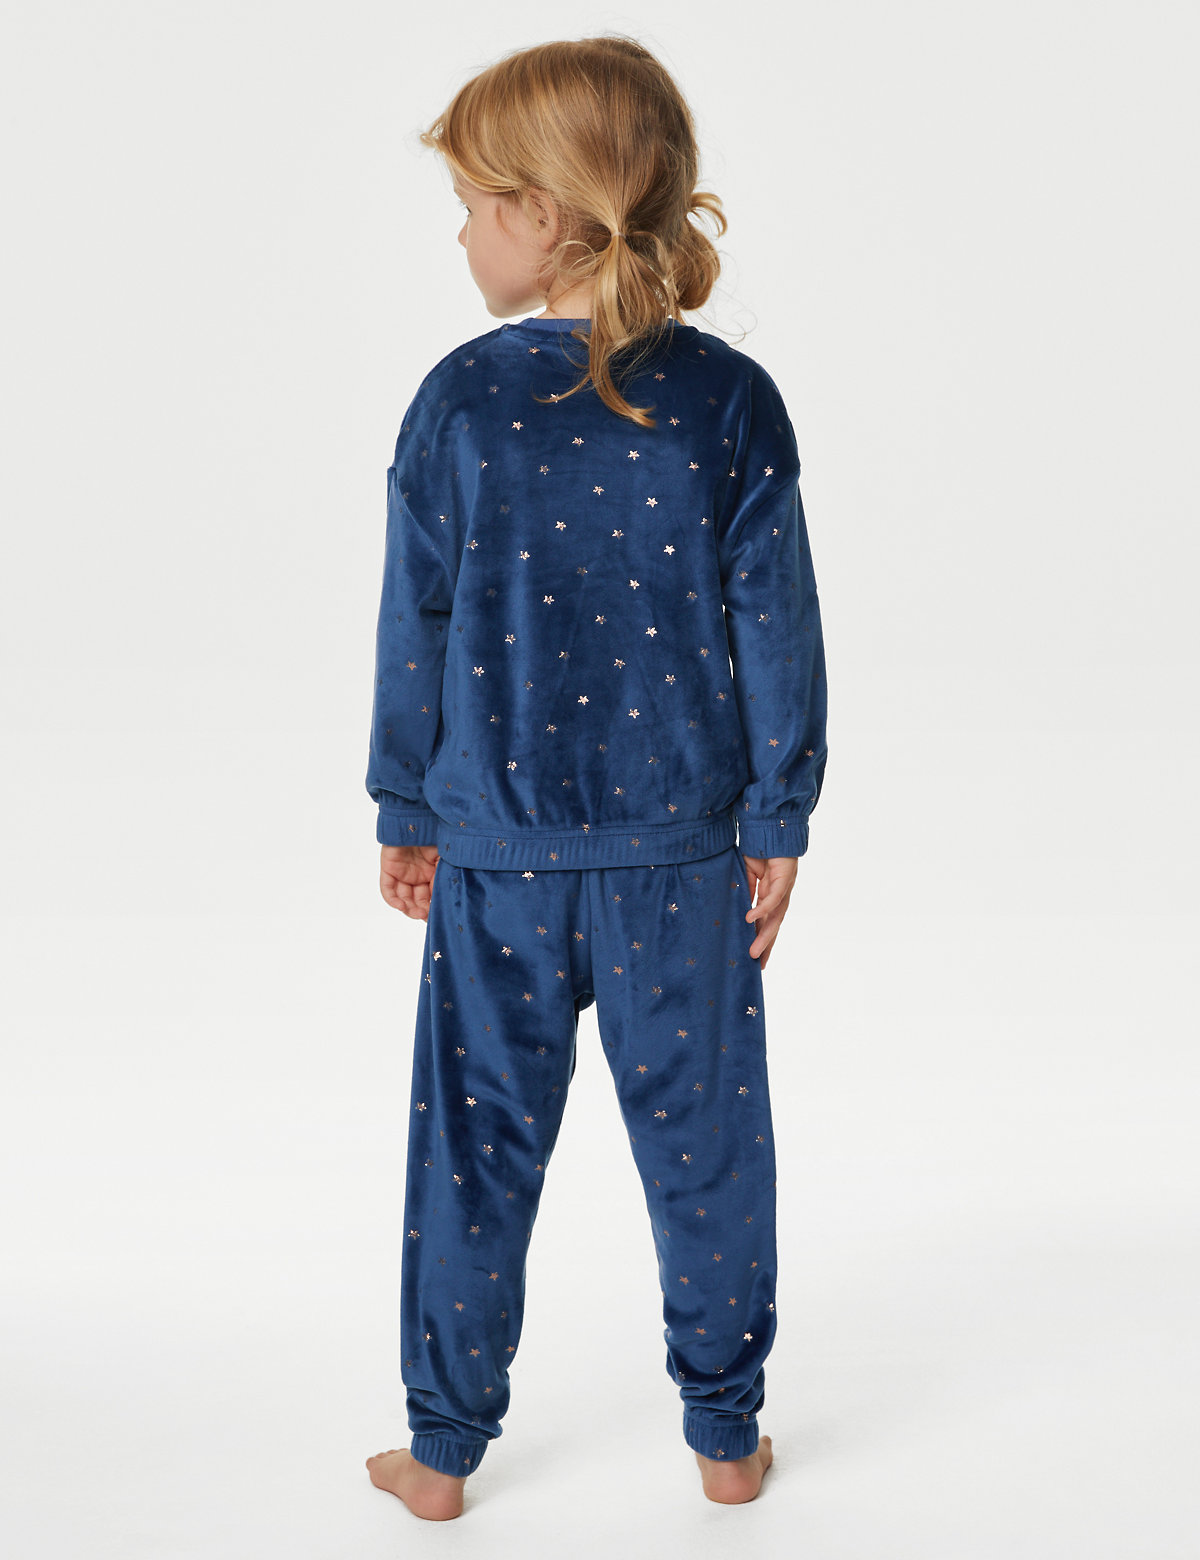 Velour Star Pyjamas (1-8 Yrs)